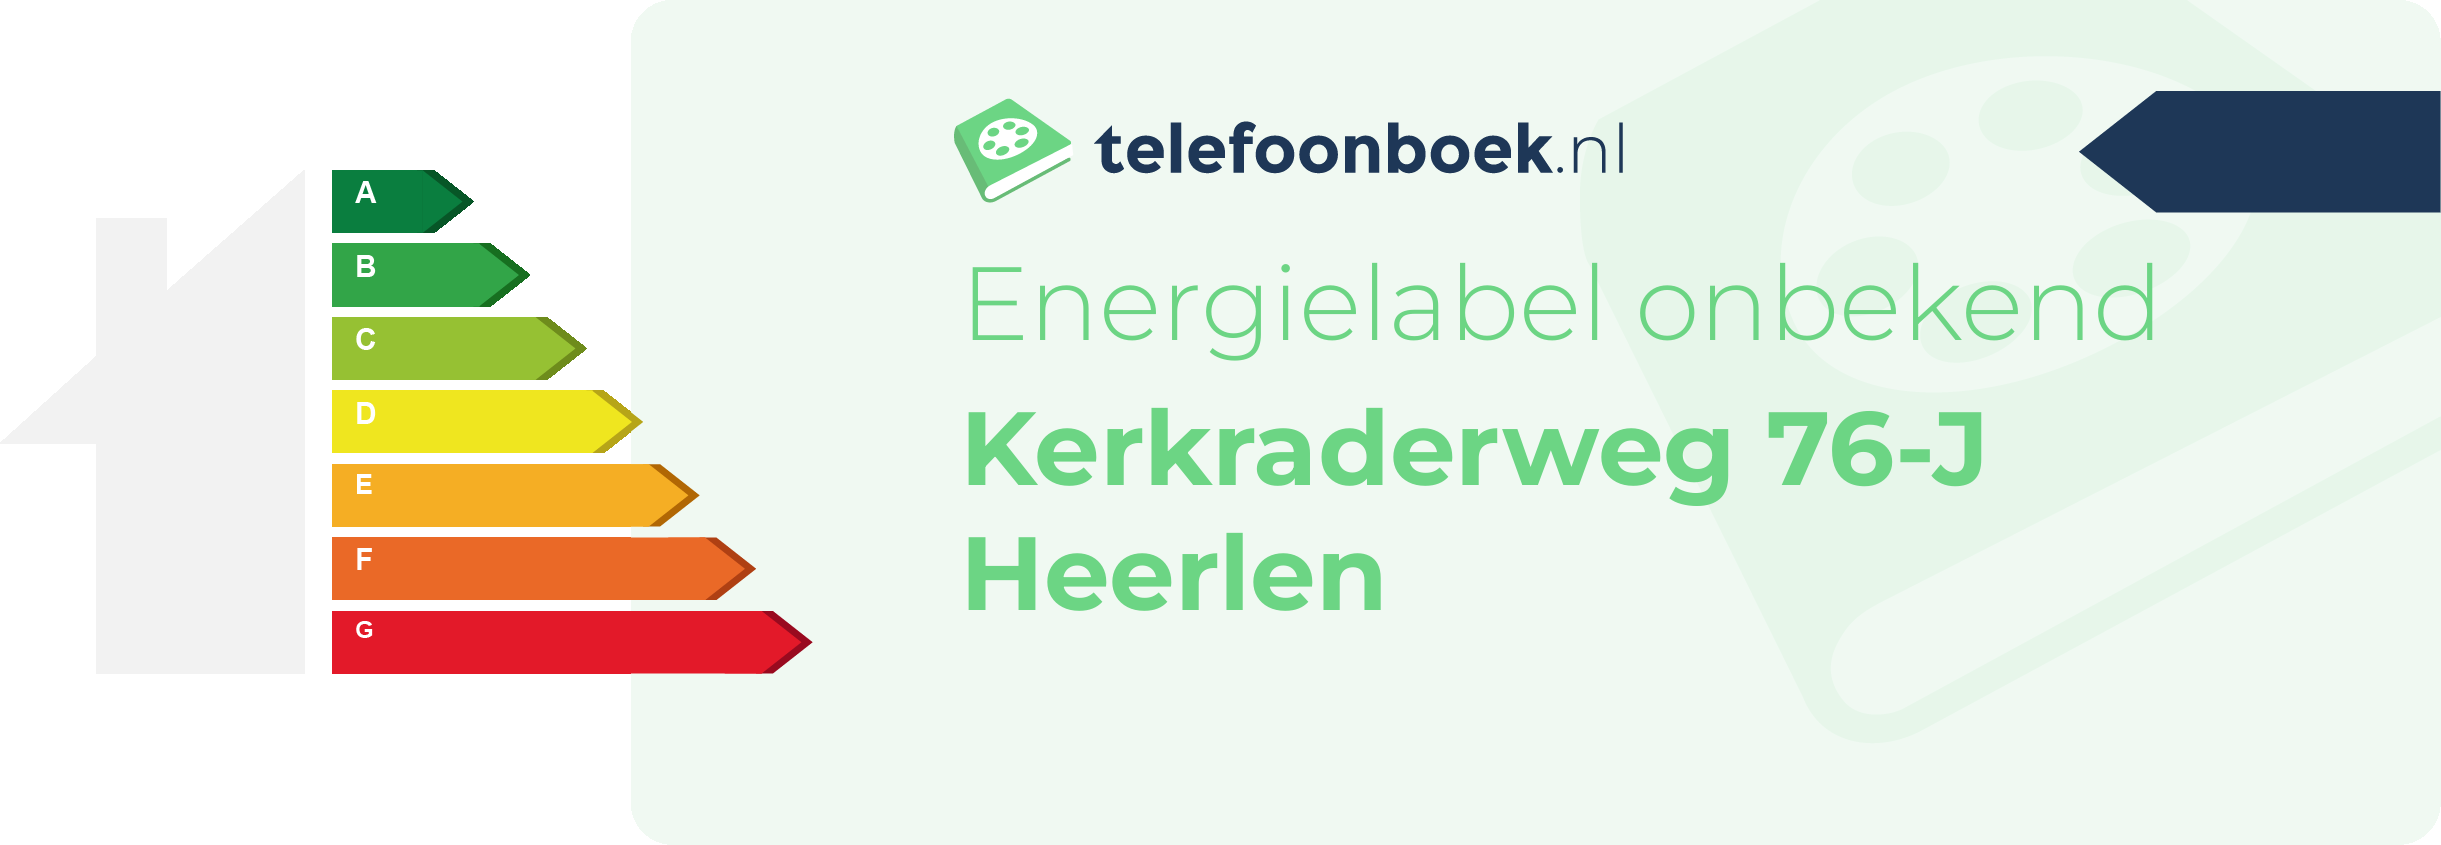 Energielabel Kerkraderweg 76-J Heerlen